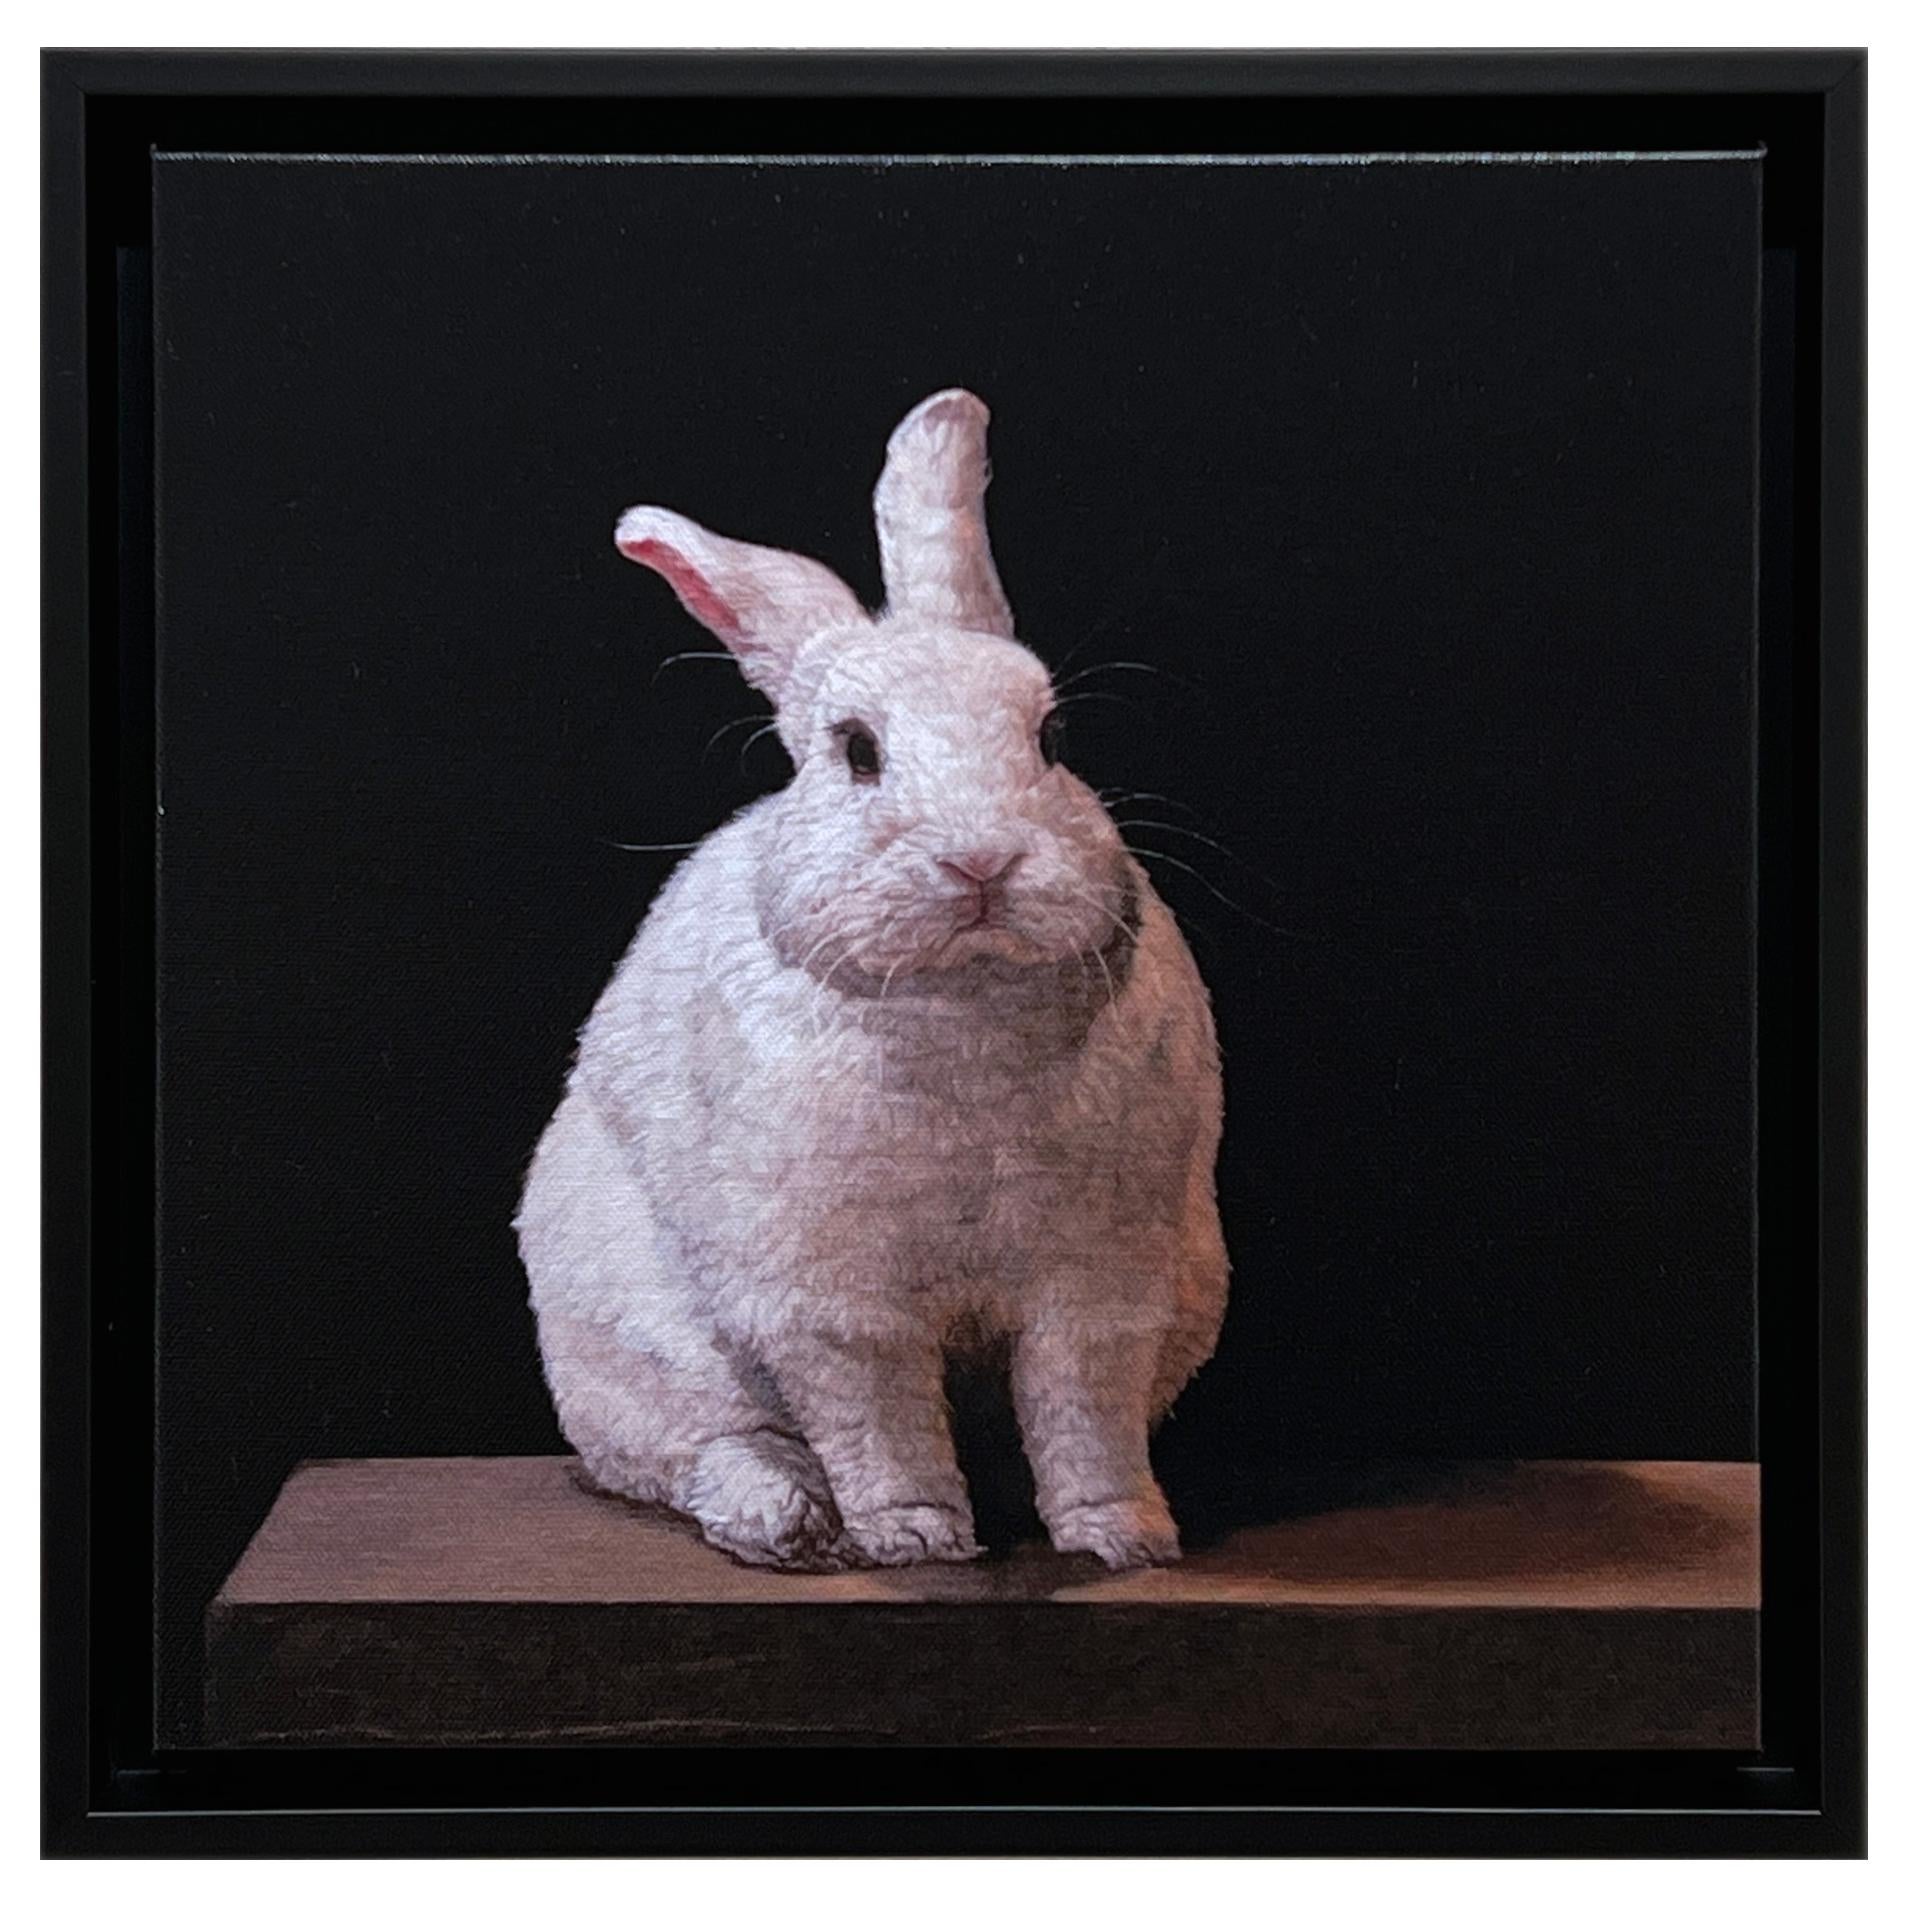 Animal Print Patricia Traub - LAPIN HYBRIDE - Contemporary / photorealism / animal print 